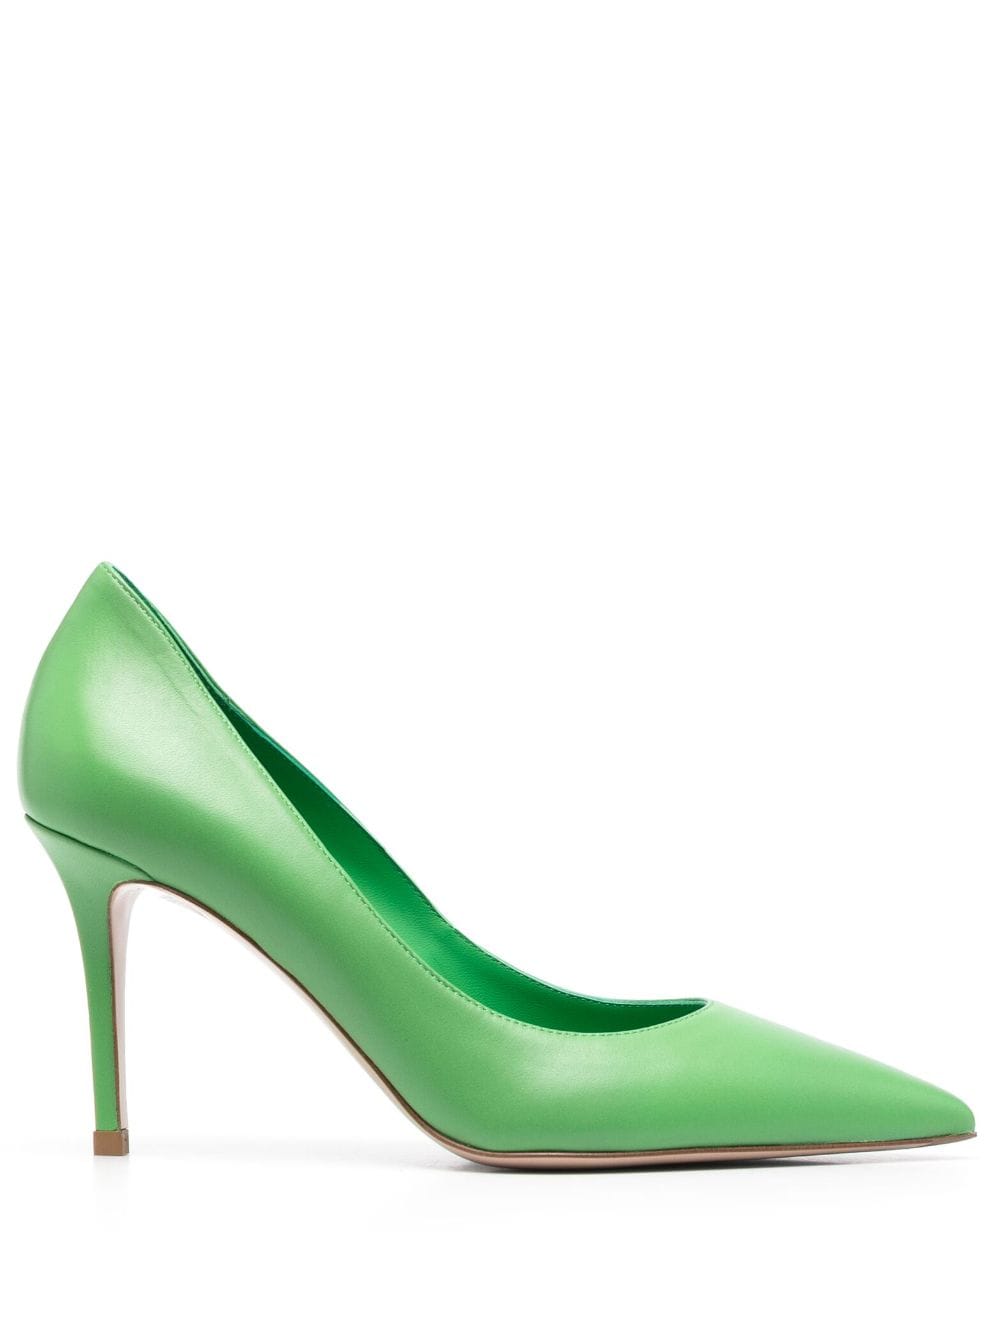 Le Silla Eva 80mm leather pumps - Green von Le Silla